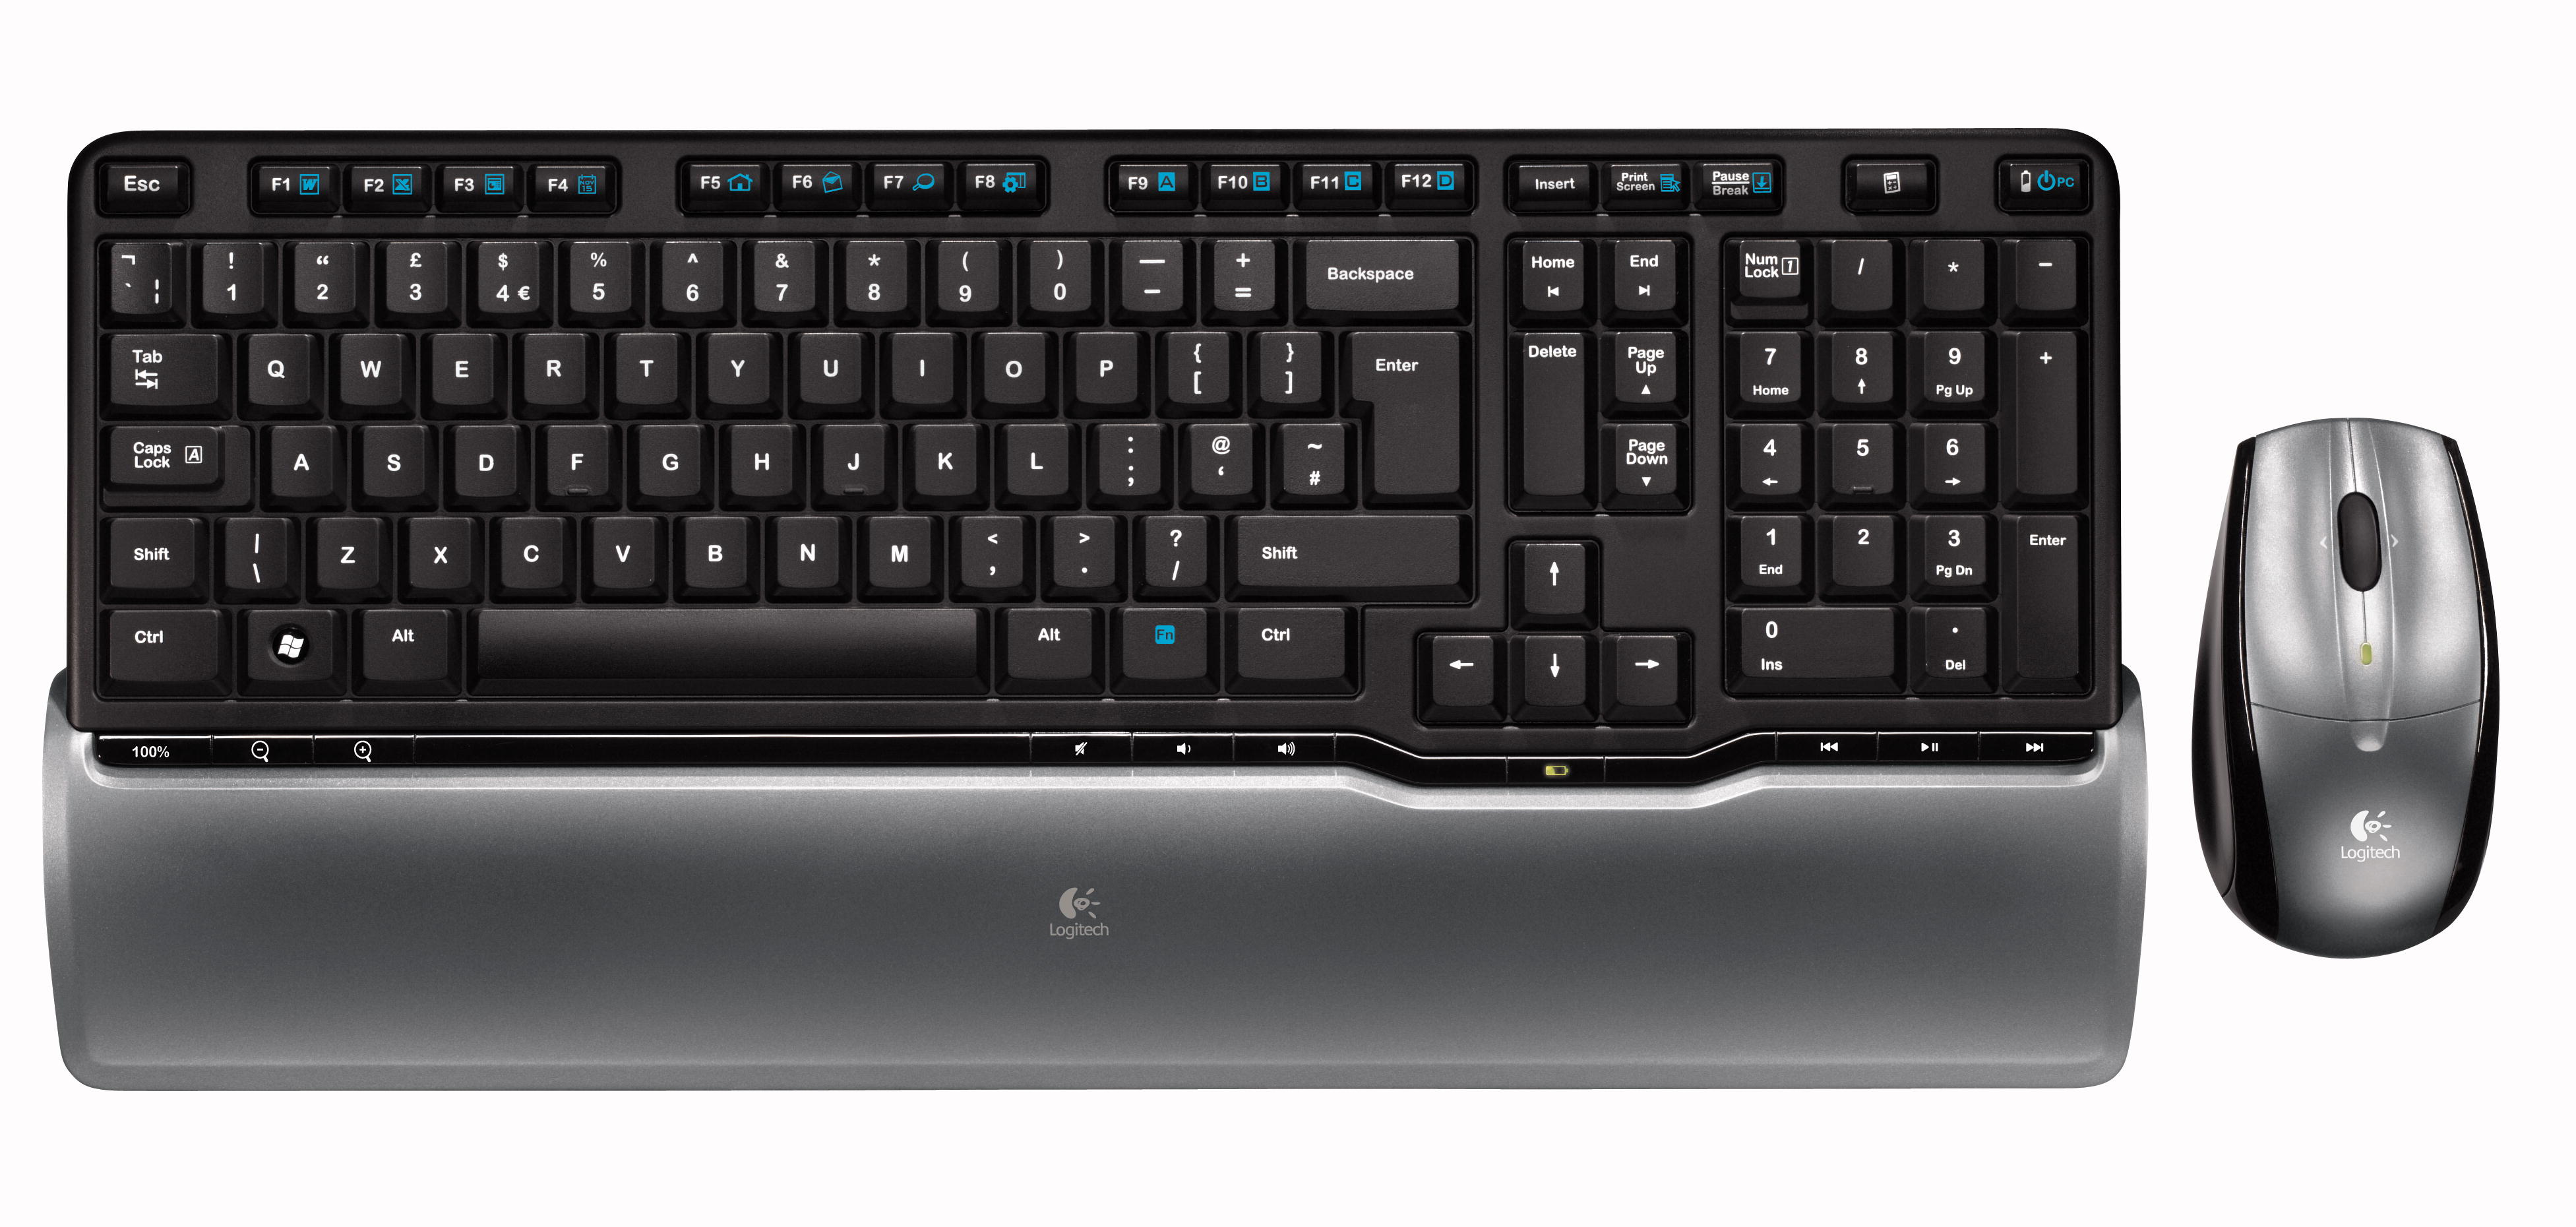 Immagine pubblicata in relazione al seguente contenuto: Logitech annuncia la nuova tastiera Illuminated Keyboard | Nome immagine: news8463_3.jpg